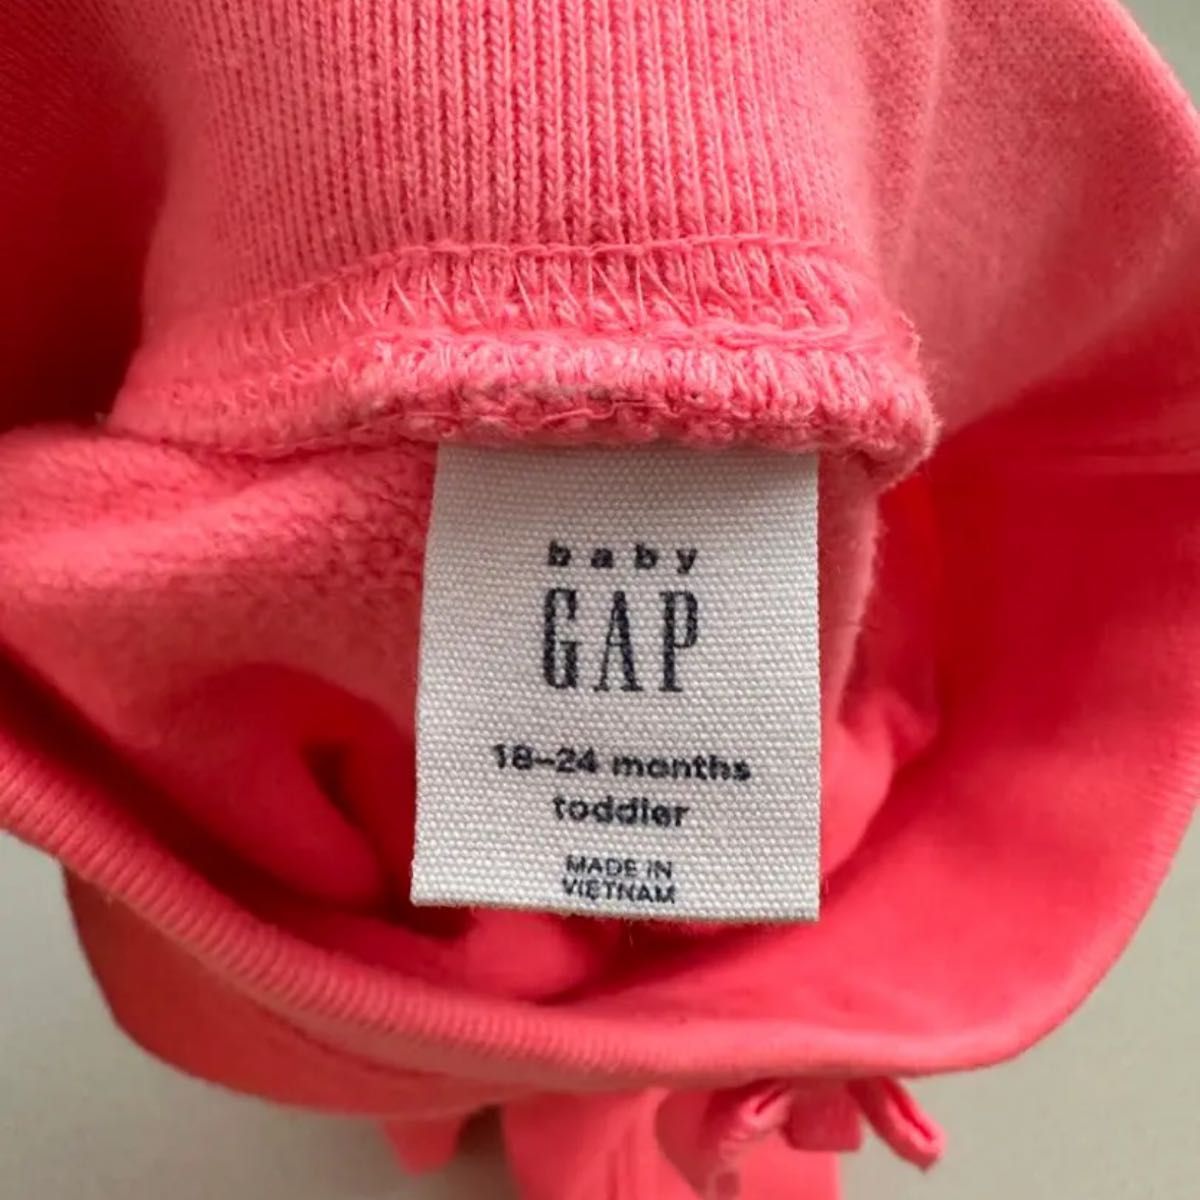 80 babyGAP ピンク パンツ ロングパンツ パジャマ ジャージ ギャップ 